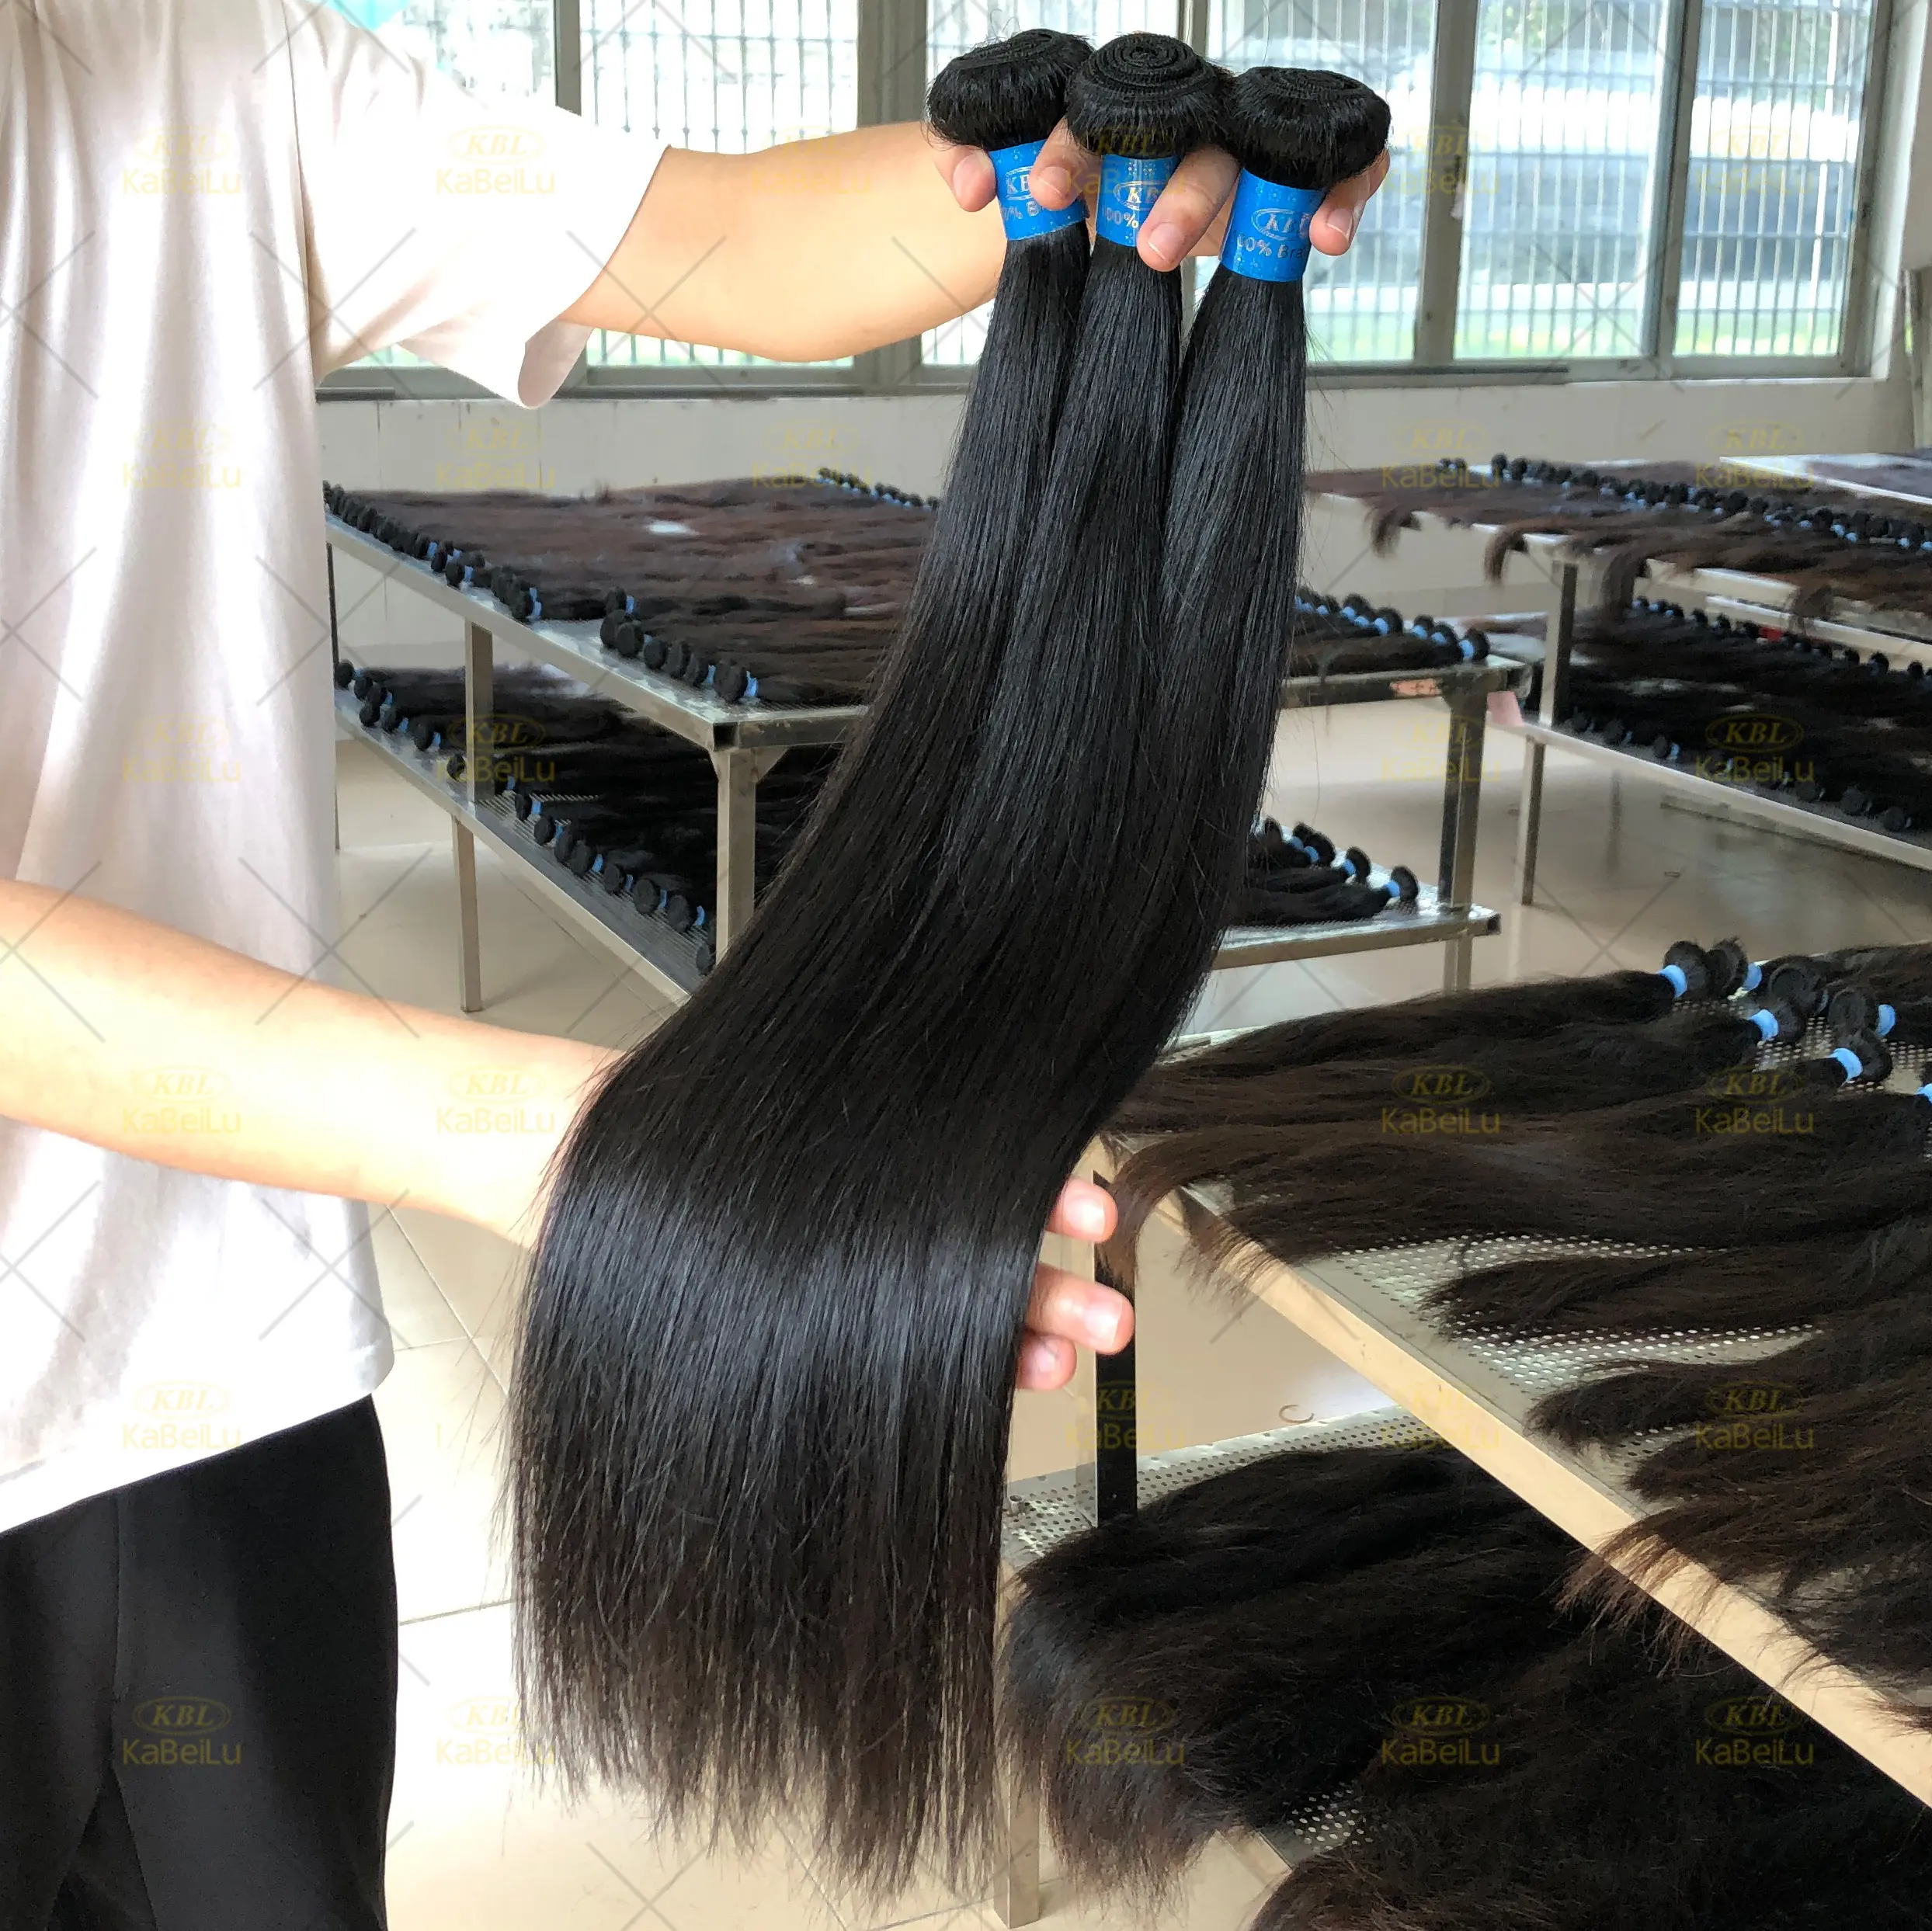 Cabelo brasileiro barato da virgem real, 16 18 20 polegadas, cabelo humano liso, trançado exótico, onda, 300 gramas de cabelo virgem